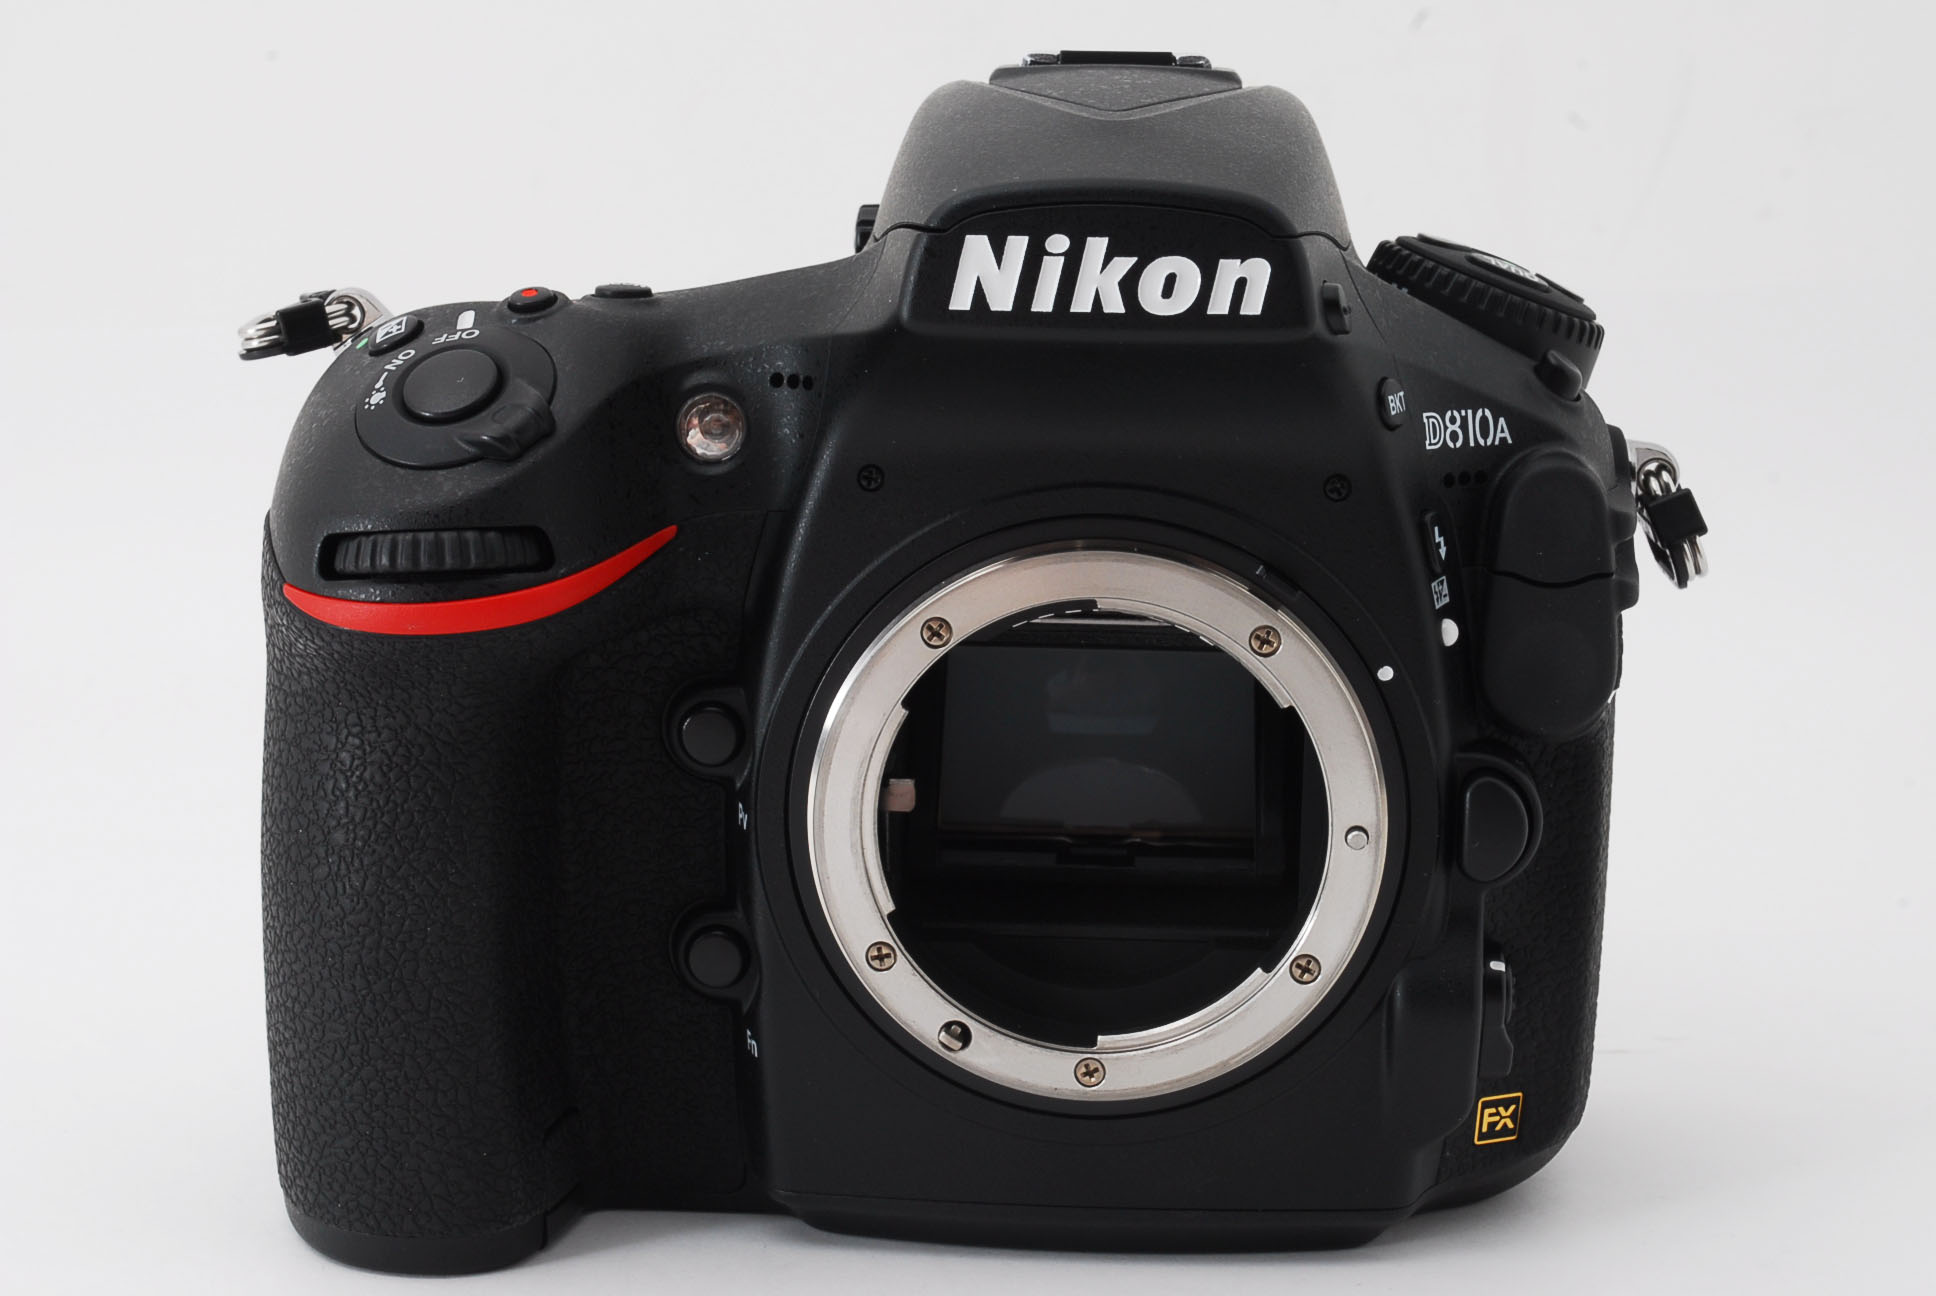 ■ ニコン Nikon D810A ボディ 天体撮影用 ショット15800程度